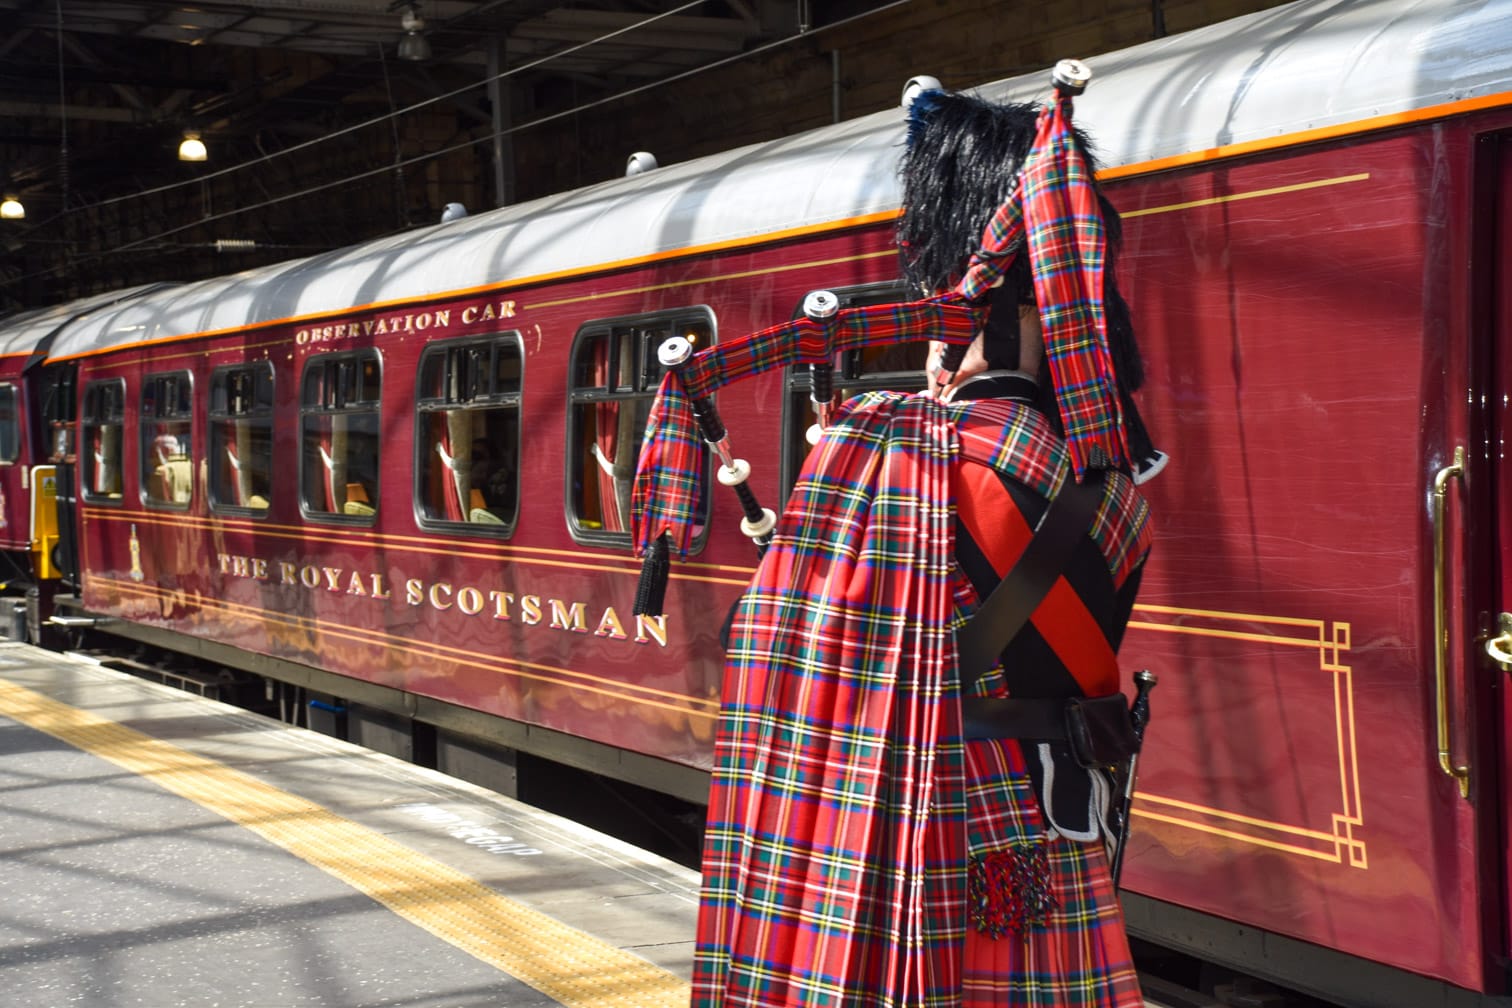 Royal Scotsman voyage train de luxe Ecosse